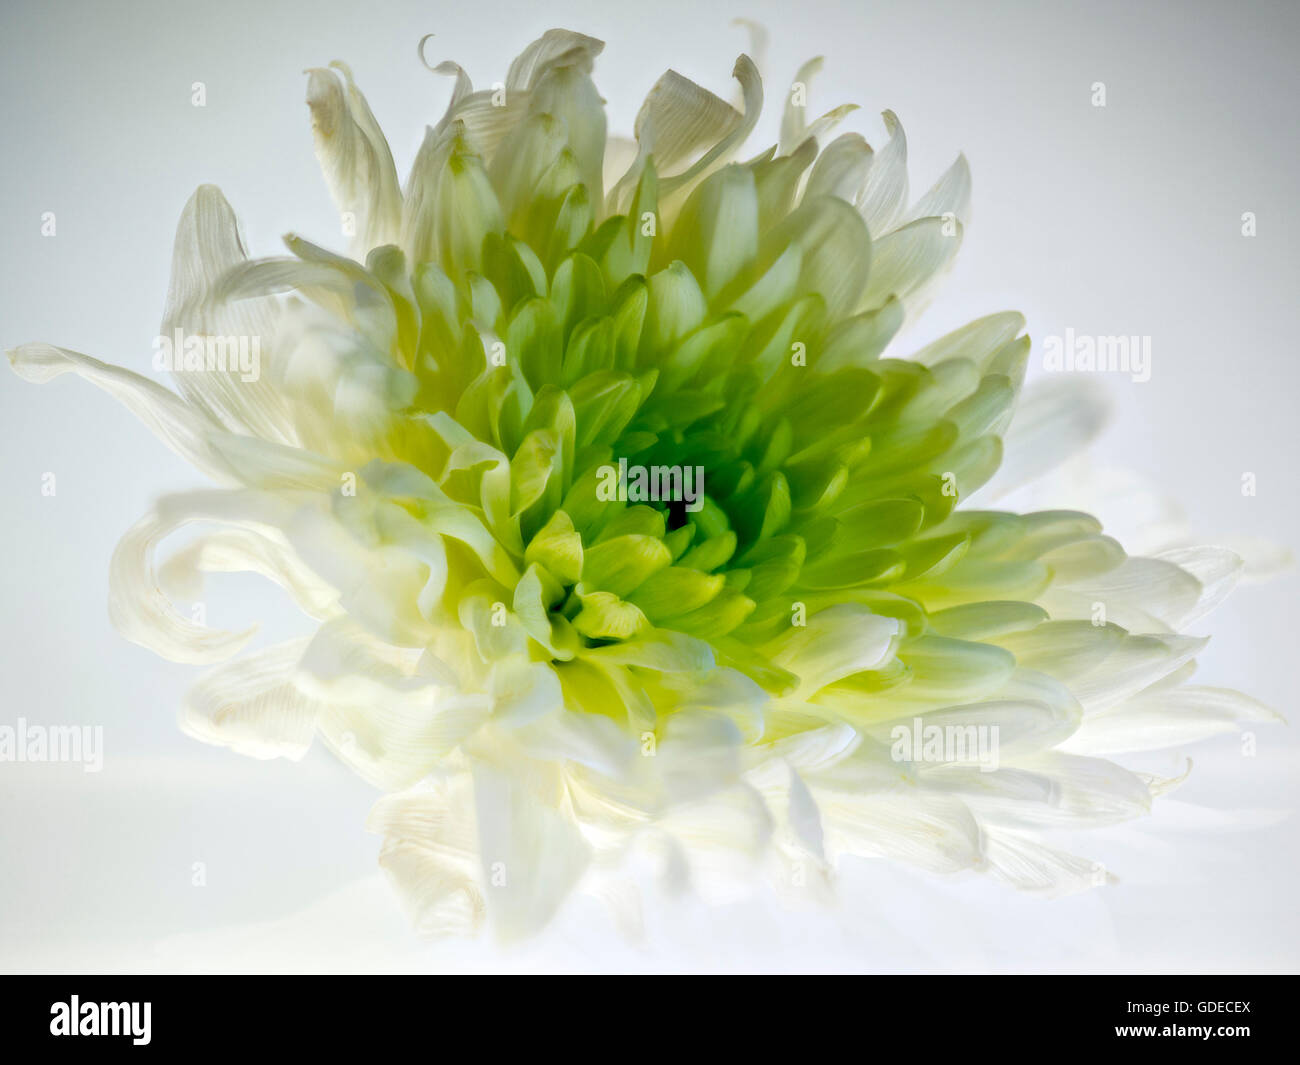 Crisantemo. Questo bianco/verde fiore è stato isolato e retro illuminati per mostrare la sua bellezza e la sua delicata struttura di petalo. Foto Stock